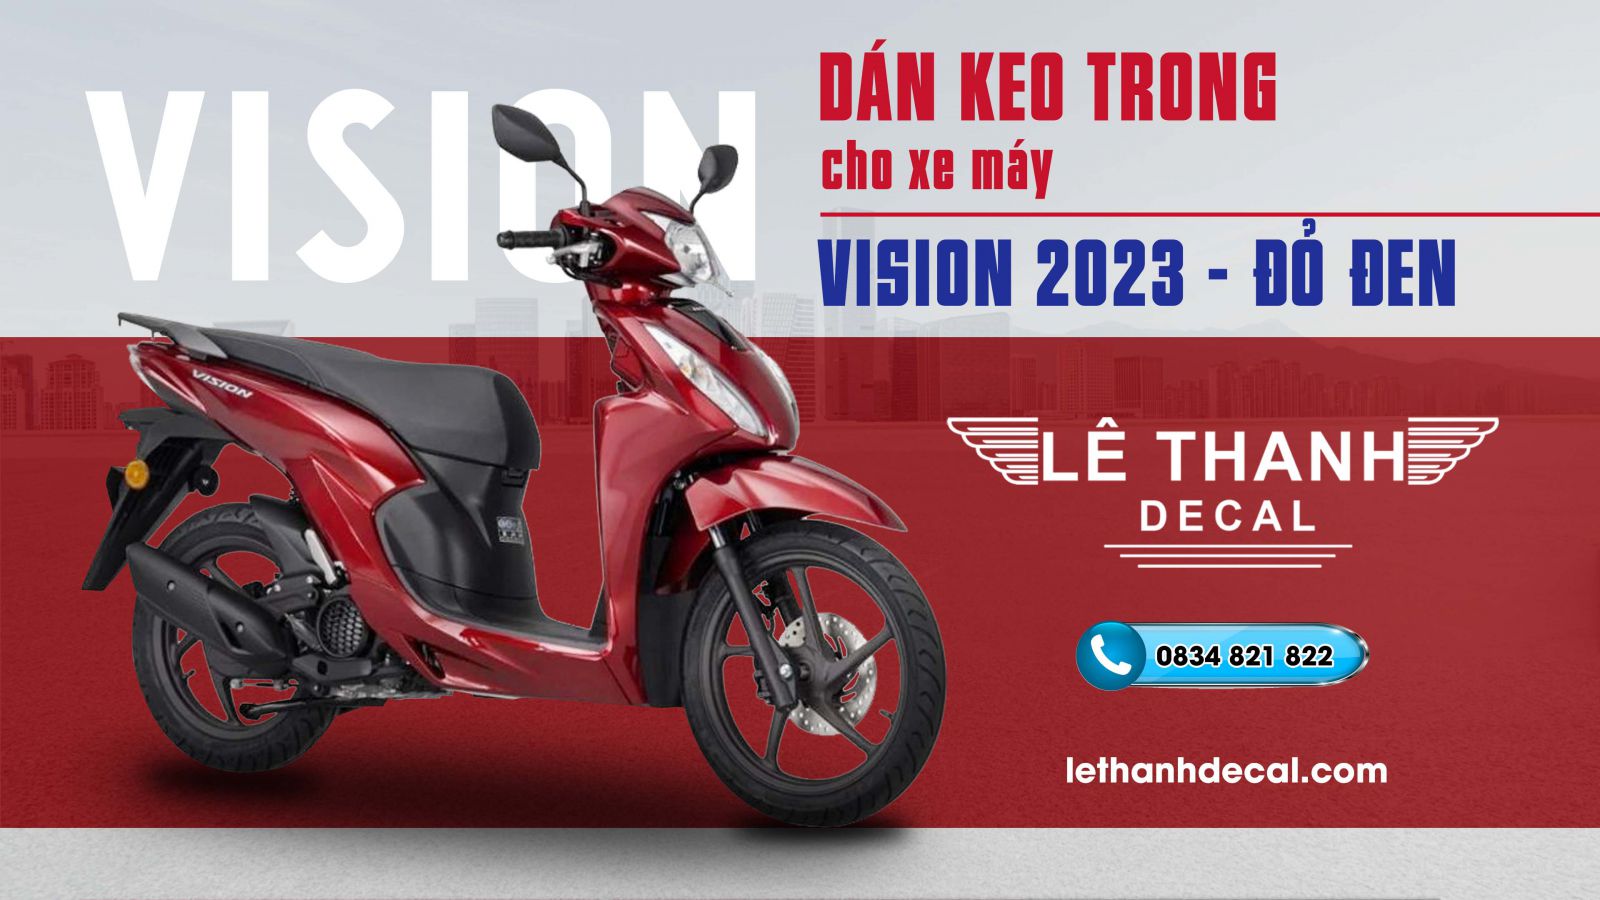 ​ Dán keo trong cho xe Vision đỏ đen 2023 phiên bản cao cấp  Click and drag to move ​